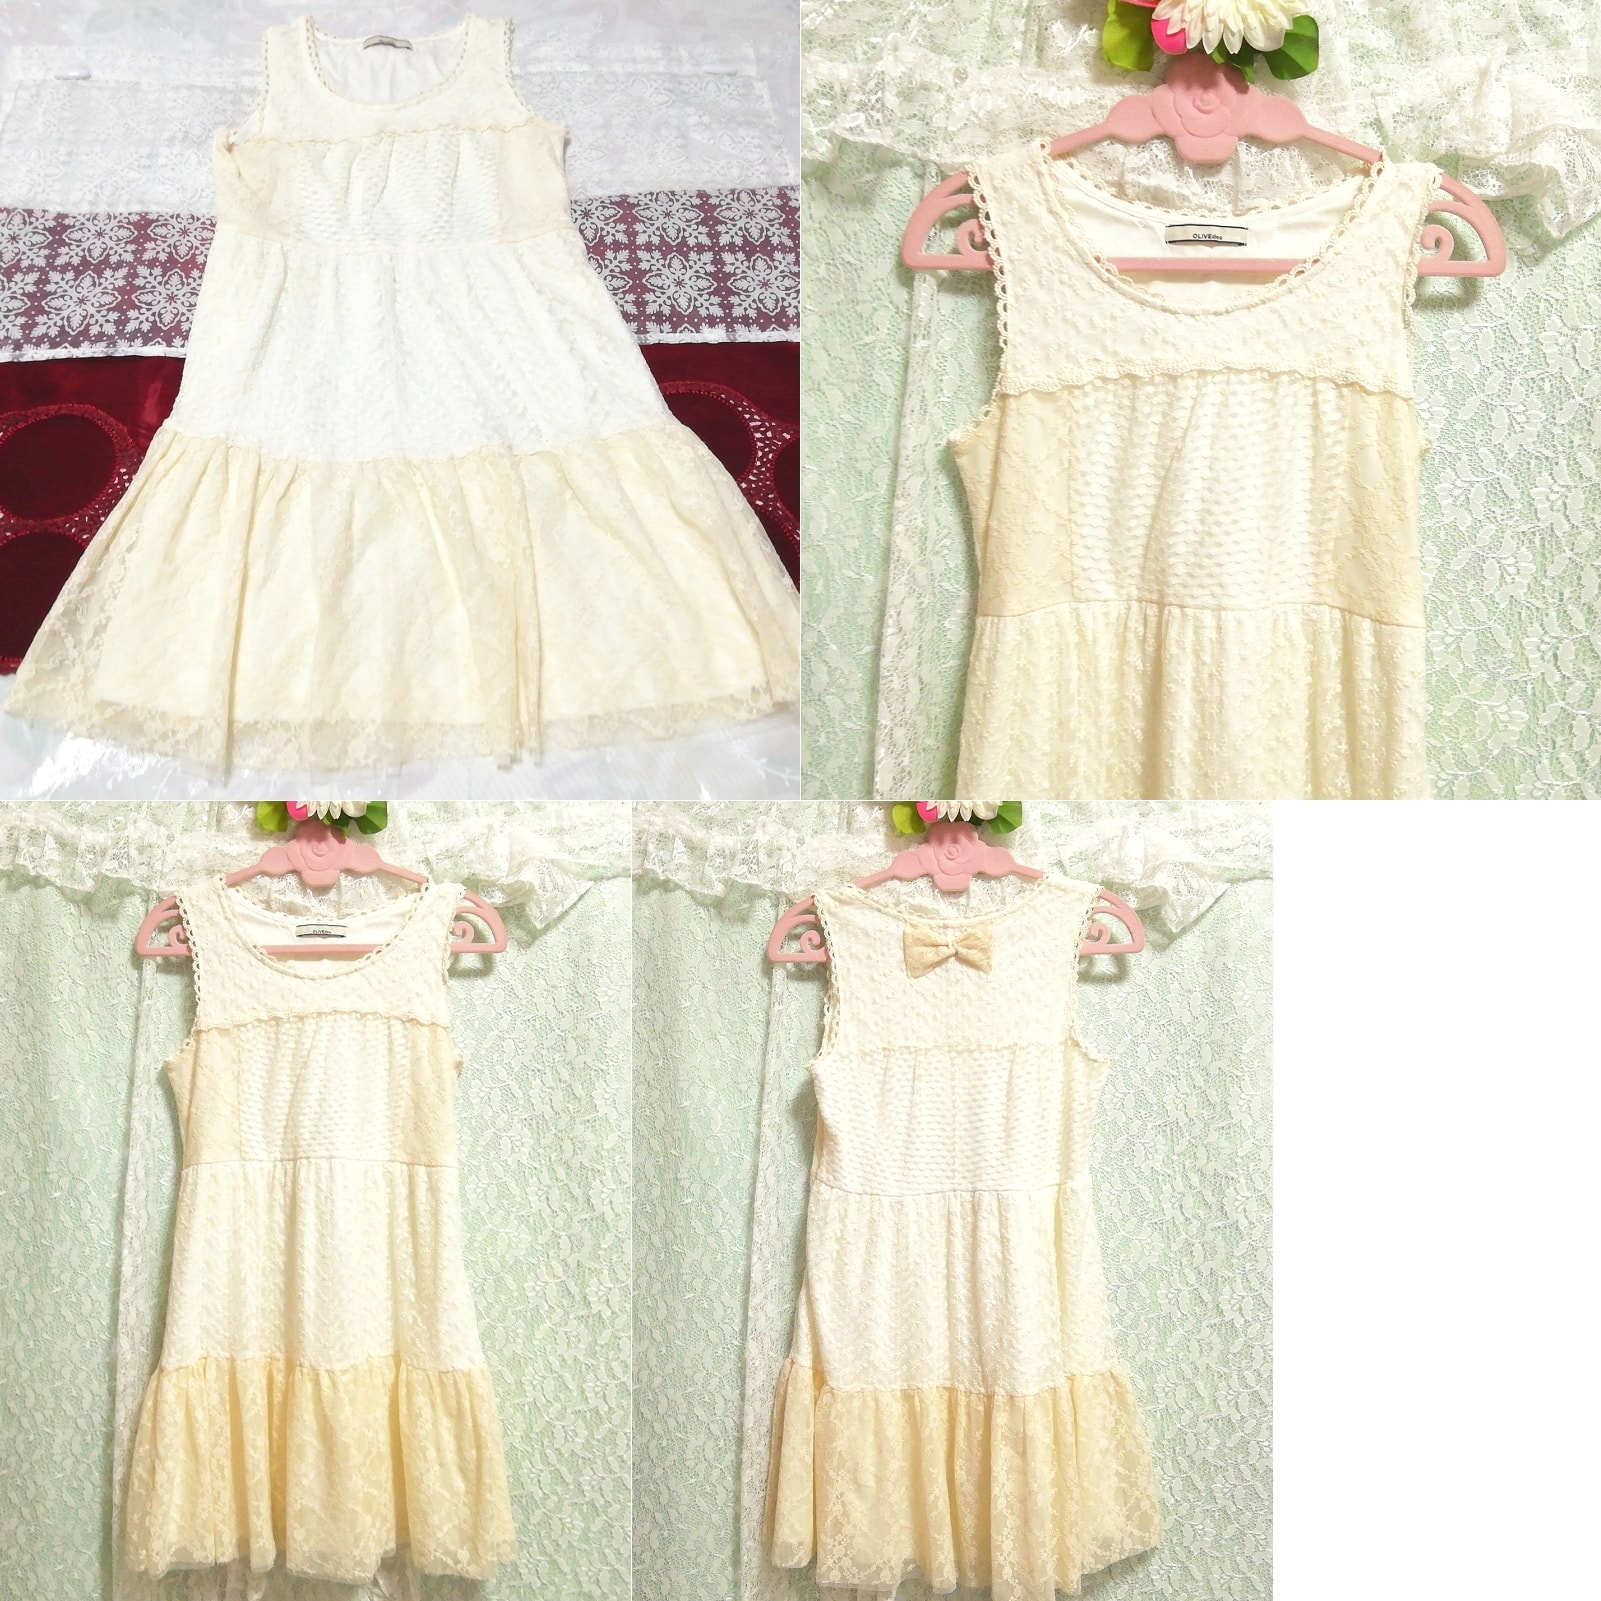 꽃무늬 화이트 아마 레이스 리본 민소매 네글리제 나이트가운 드레스, 무릎길이 스커트, m 사이즈